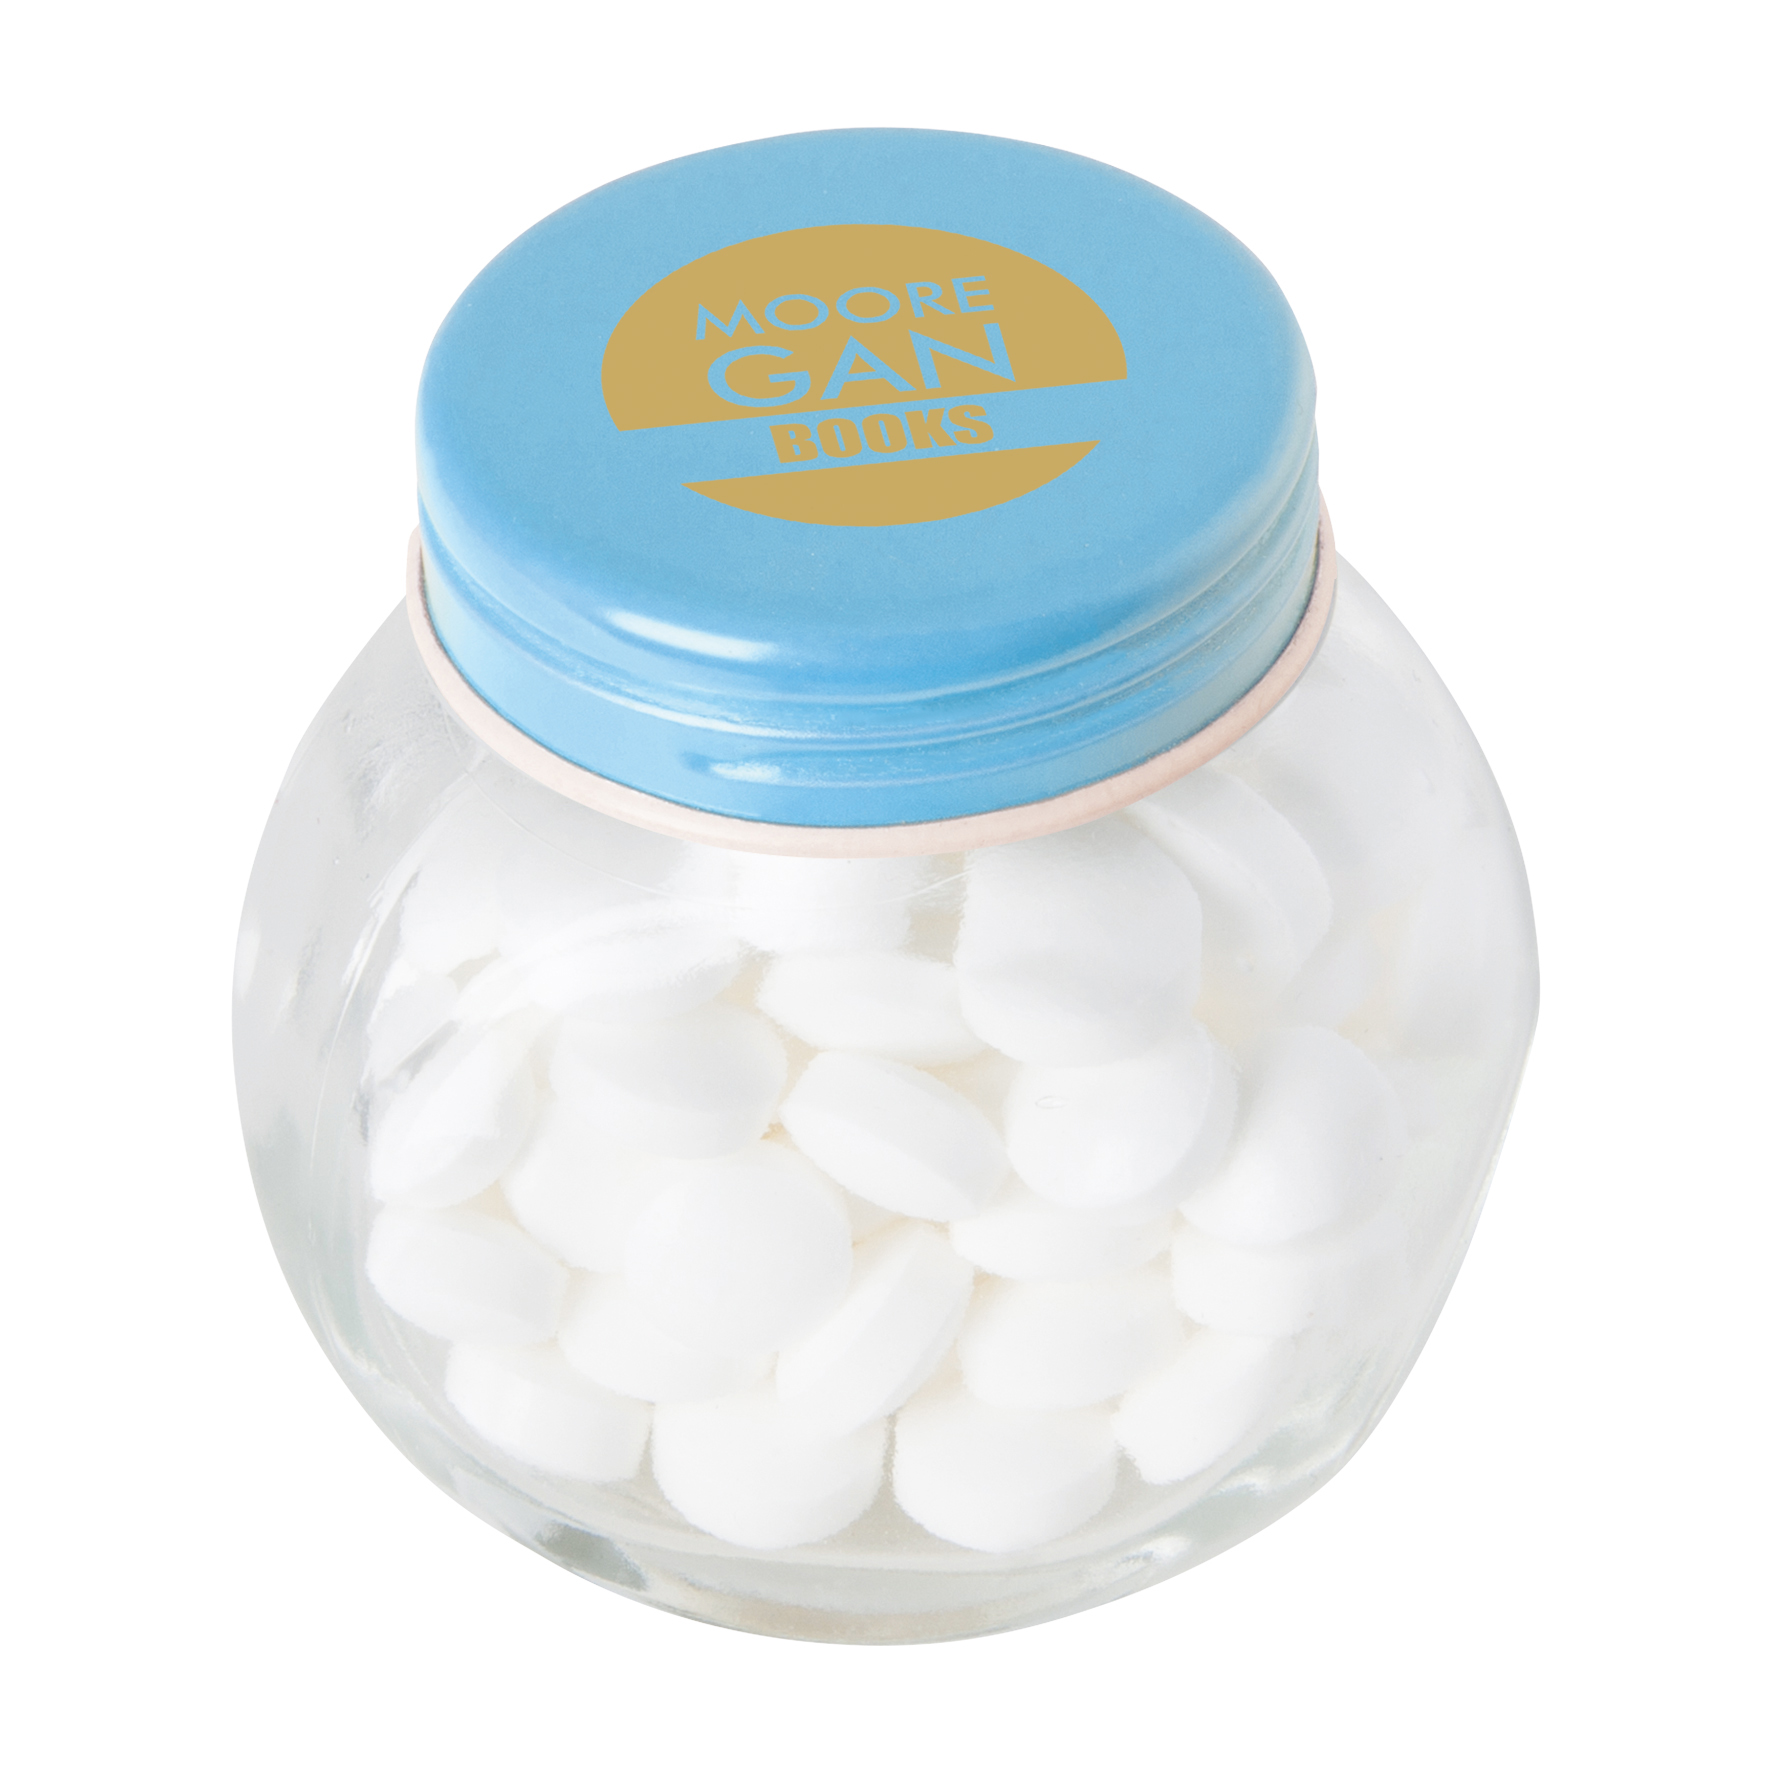 c 0160dmi 18 02 - Small glass jar with milk choco's